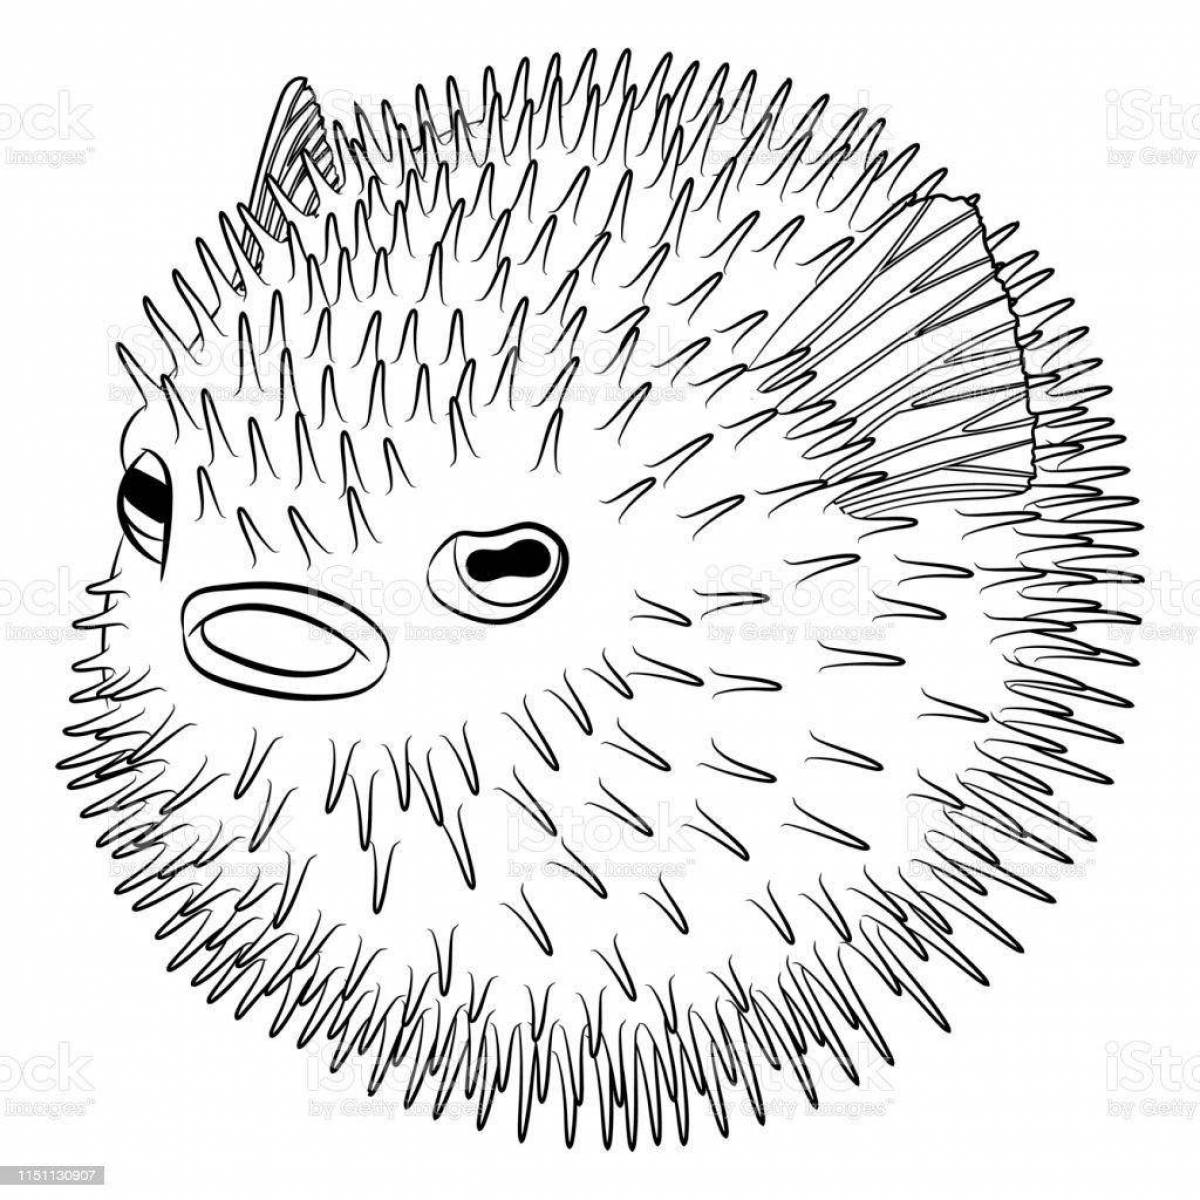 Humorous coloring hedgehog fish